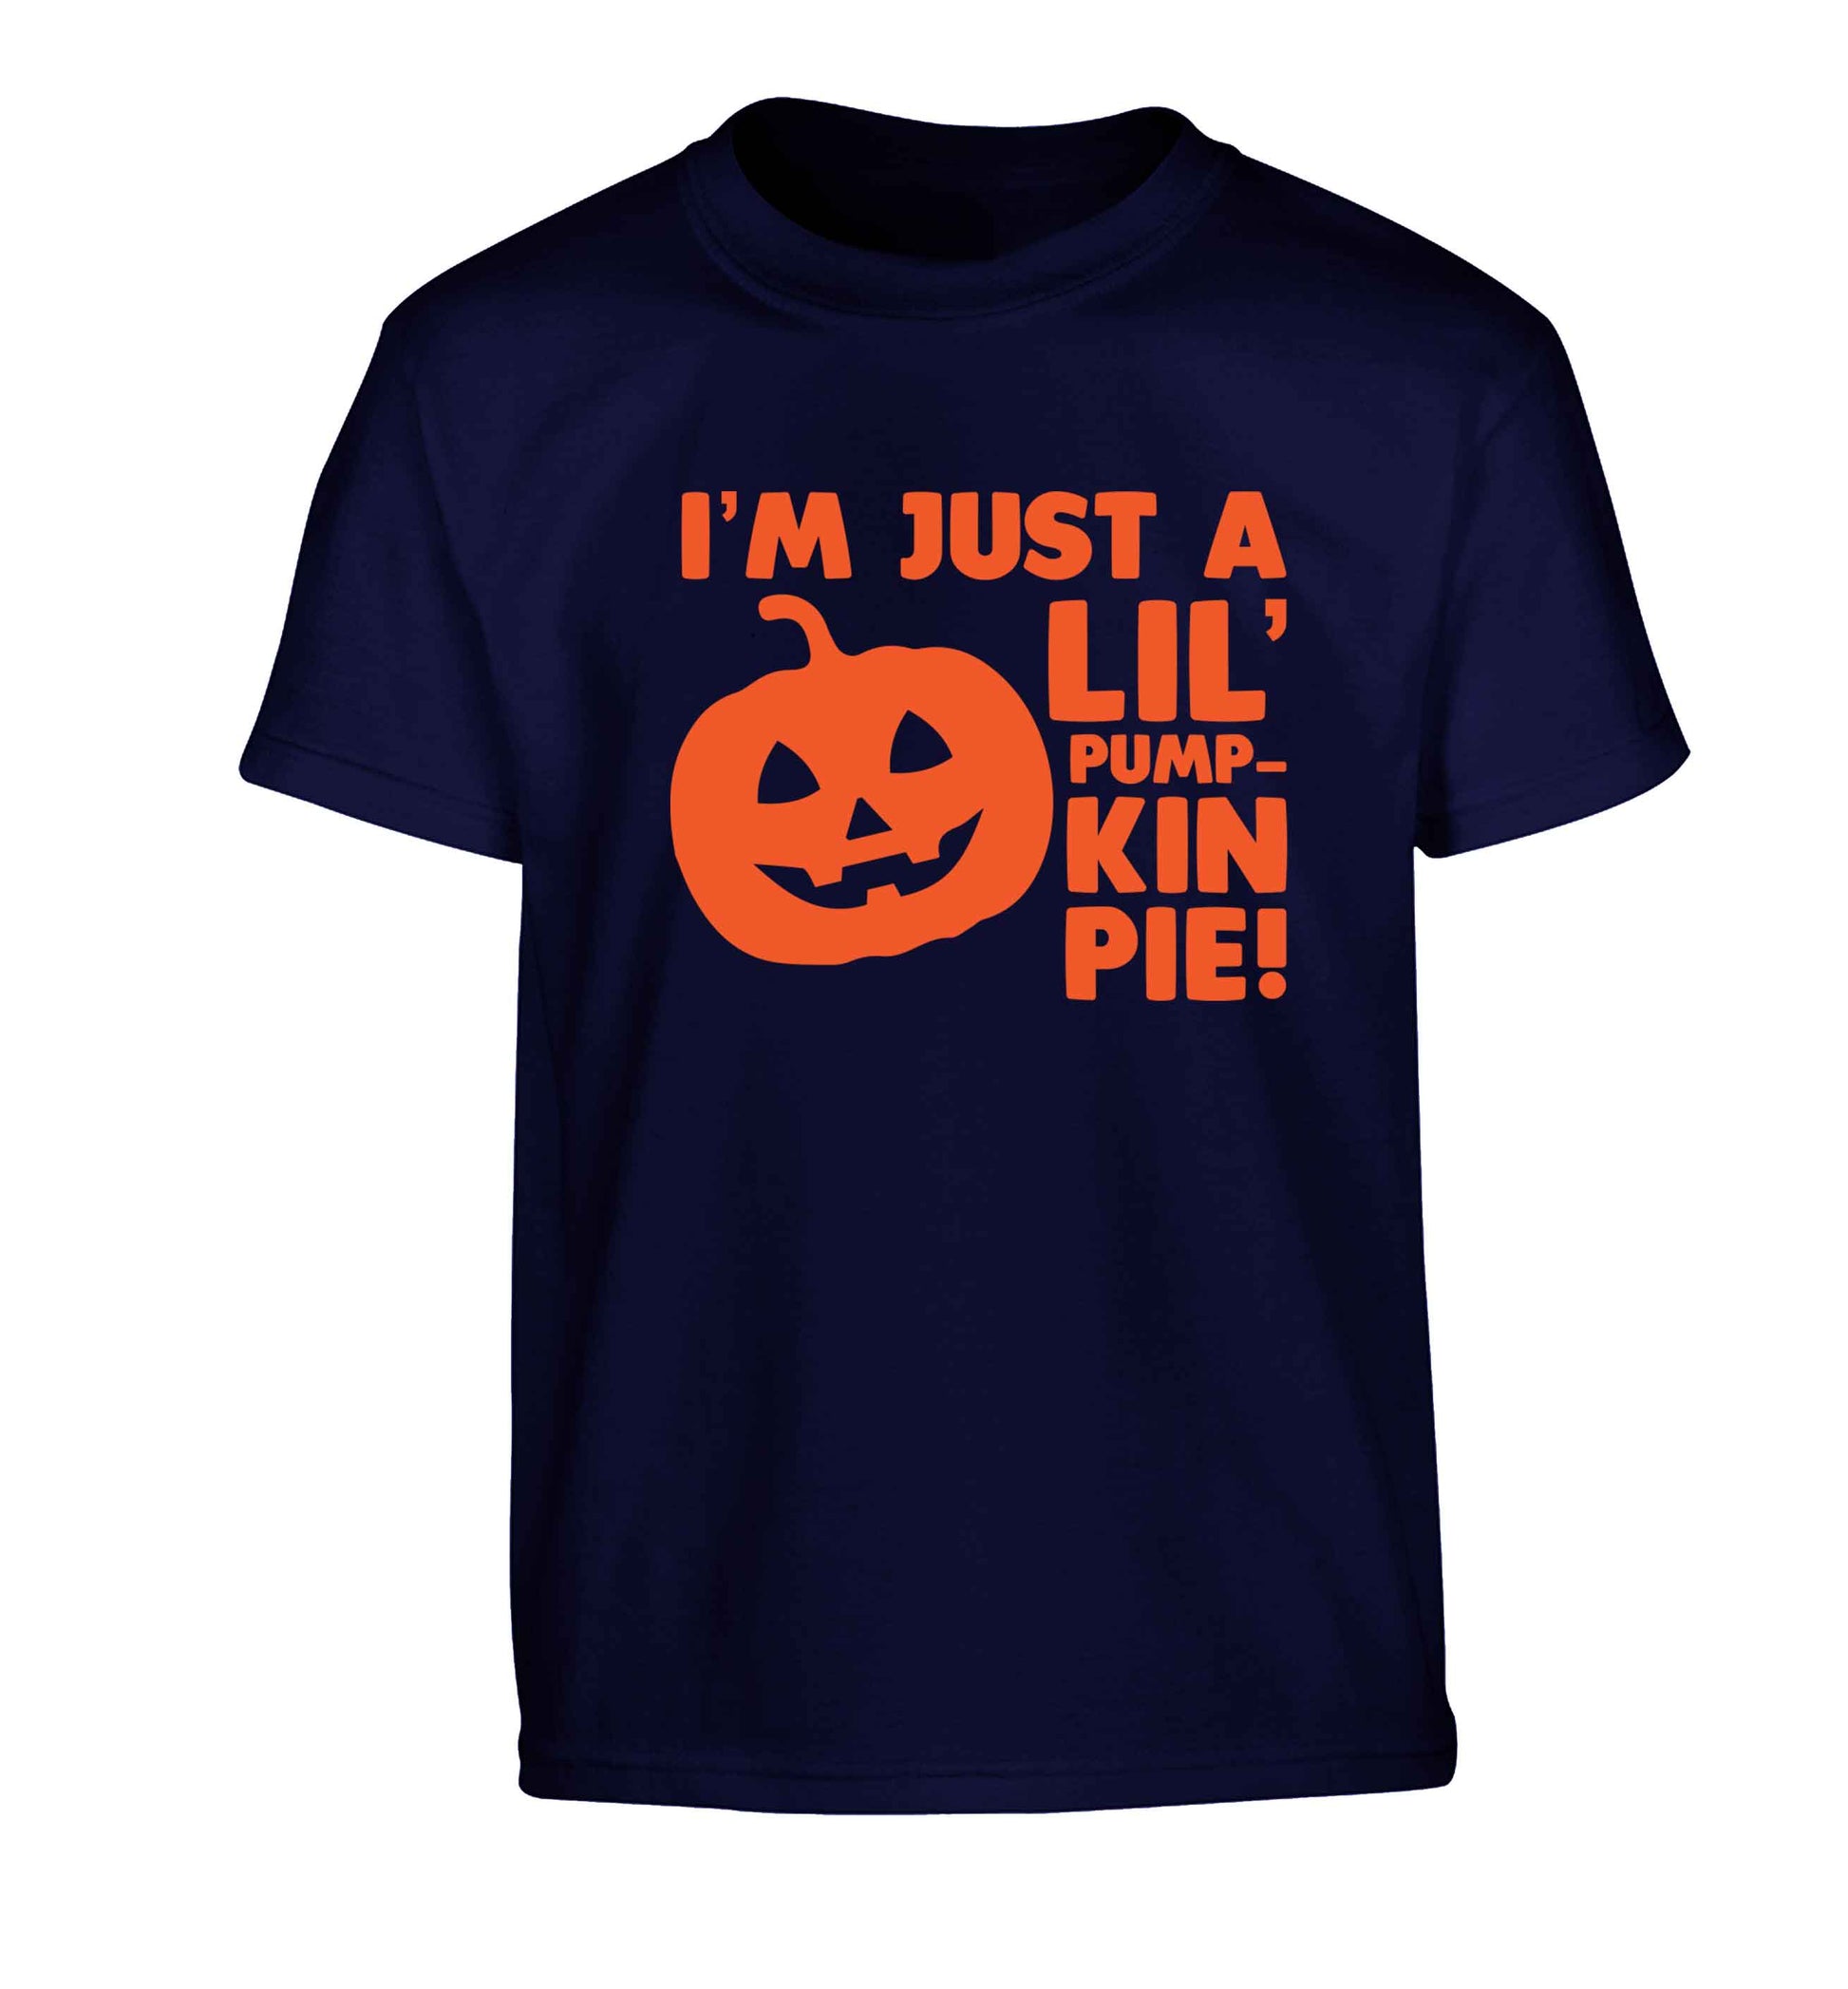 I'm just a lil' pumpkin pie Children's navy Tshirt 12-13 Years